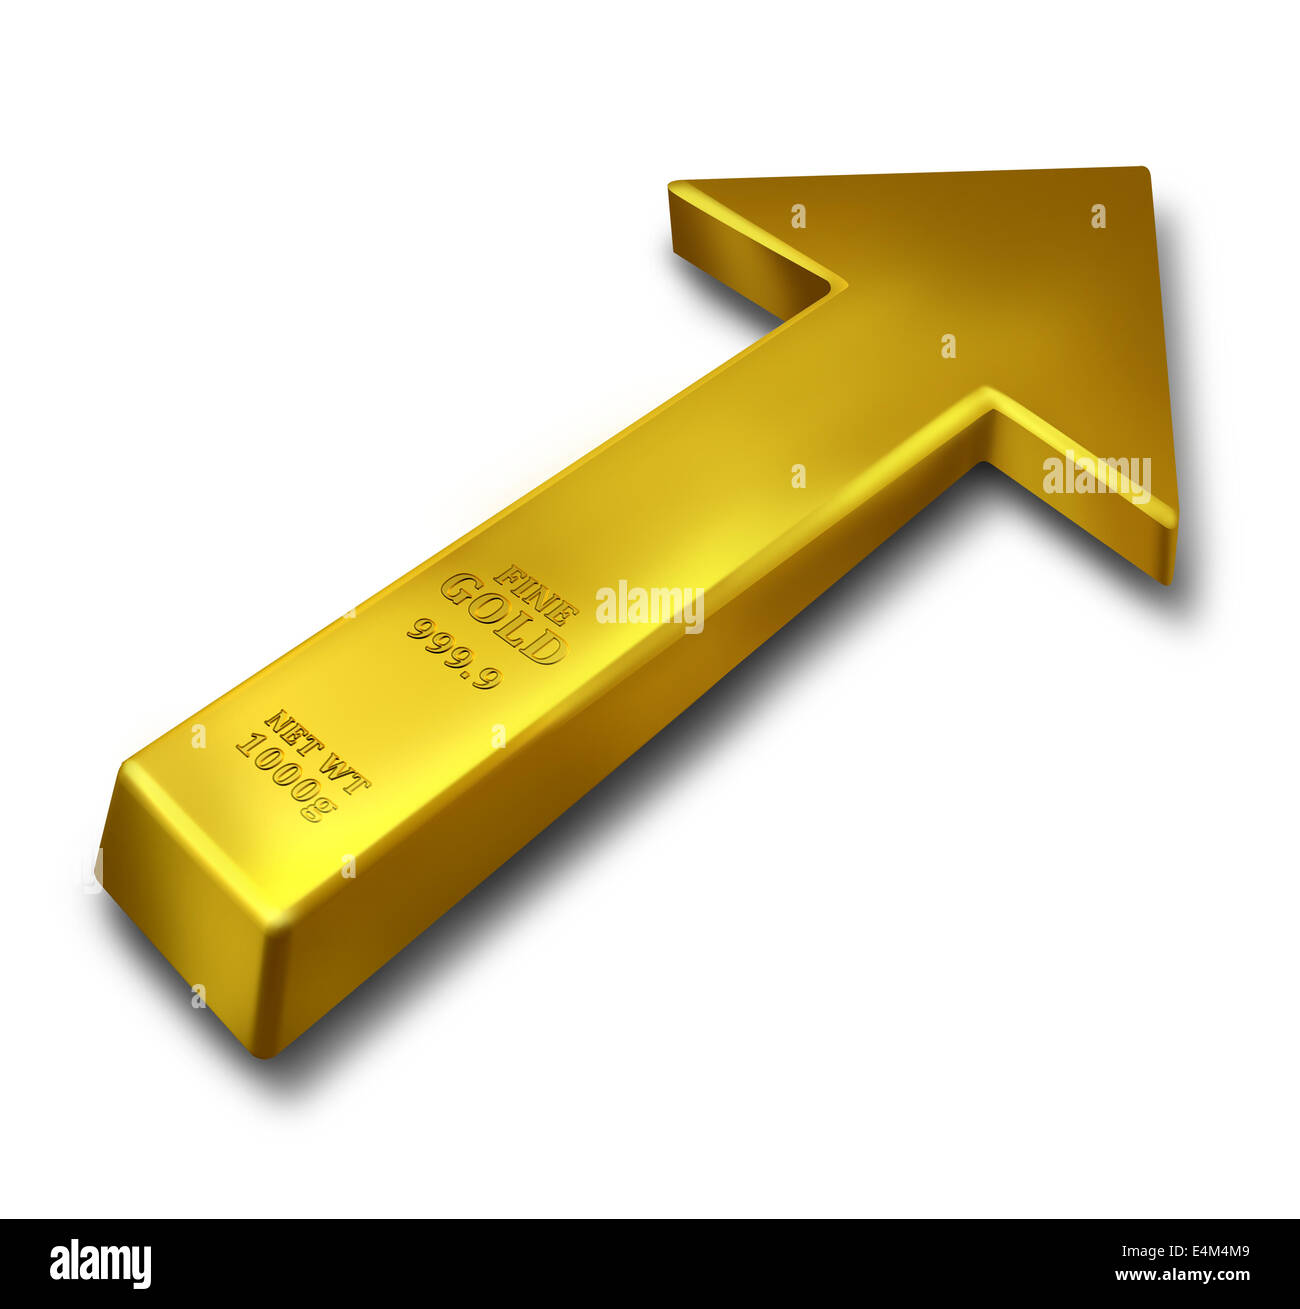 Concepto de negocio aumento de oro y productos básicos aumento de precio símbolo como una barra de color amarillo en forma de objetos de metal precioso como una flecha hacia arriba sobre un fondo blanco. Foto de stock